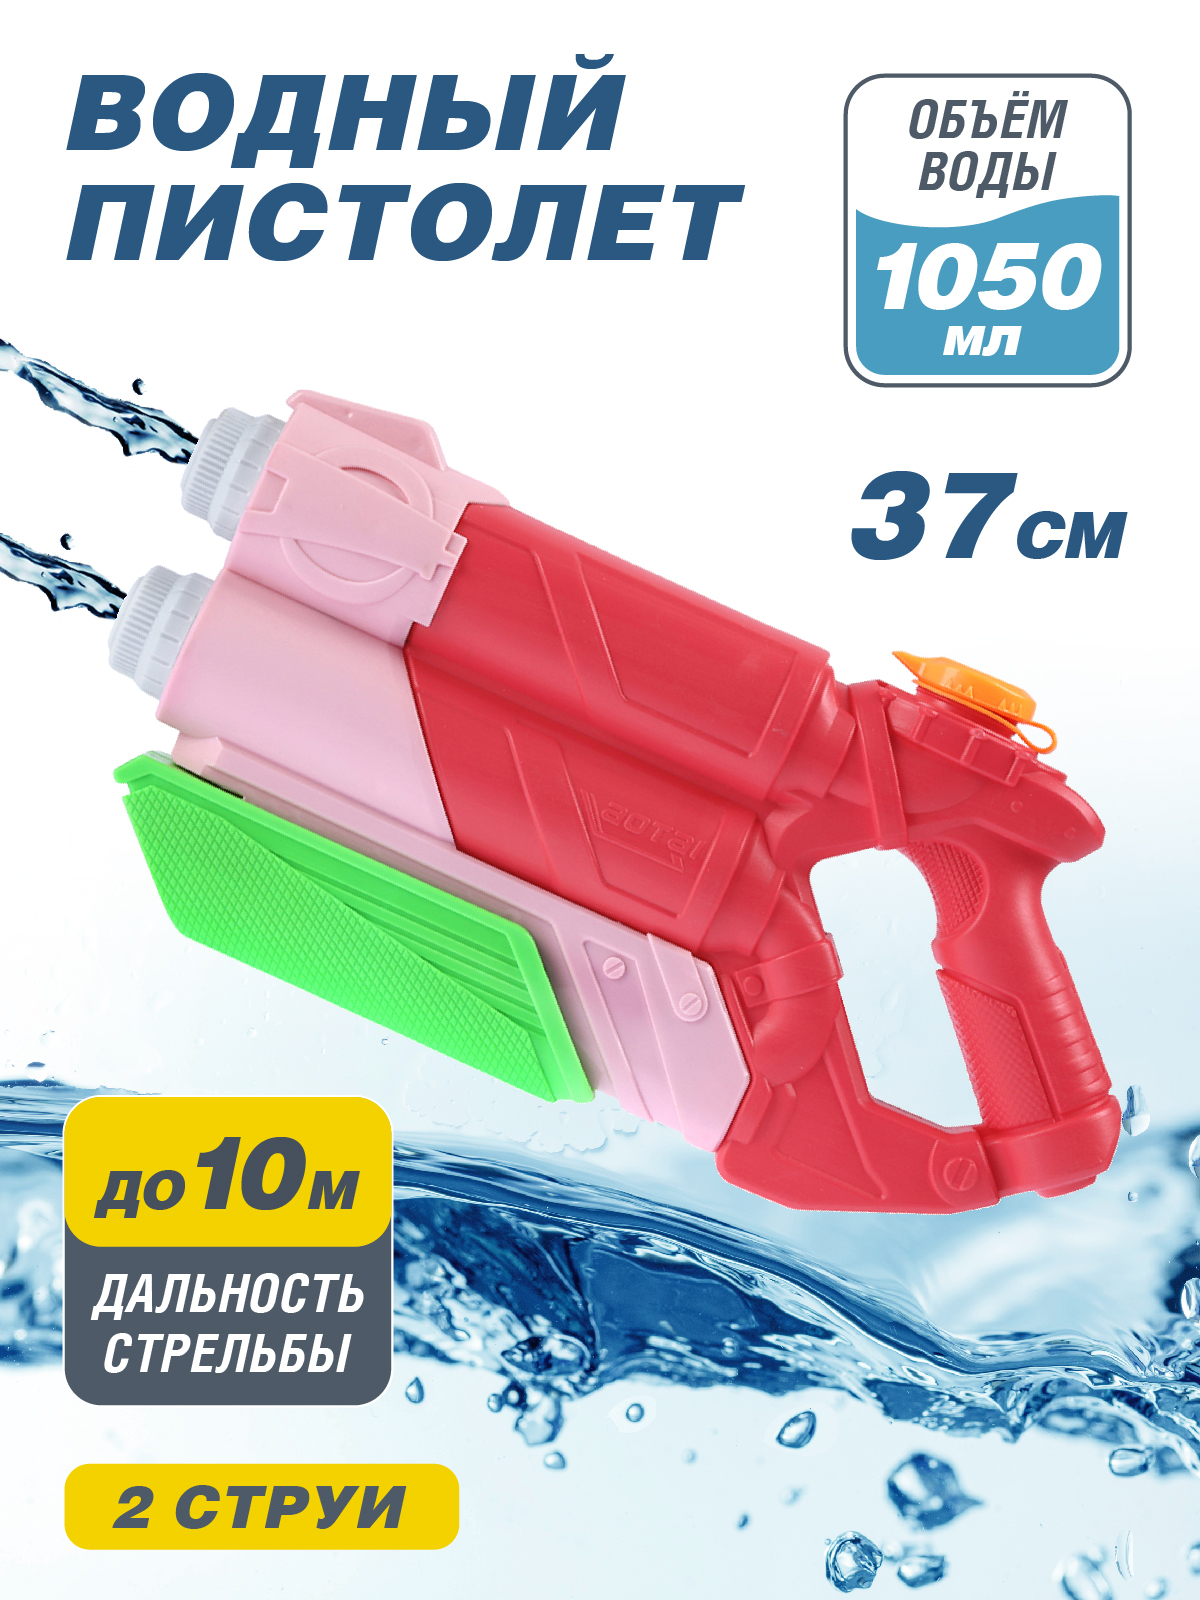 Водный пистолет игрушечный, резервуар 1050 мл, водный бой, игры с водой, JB0211485